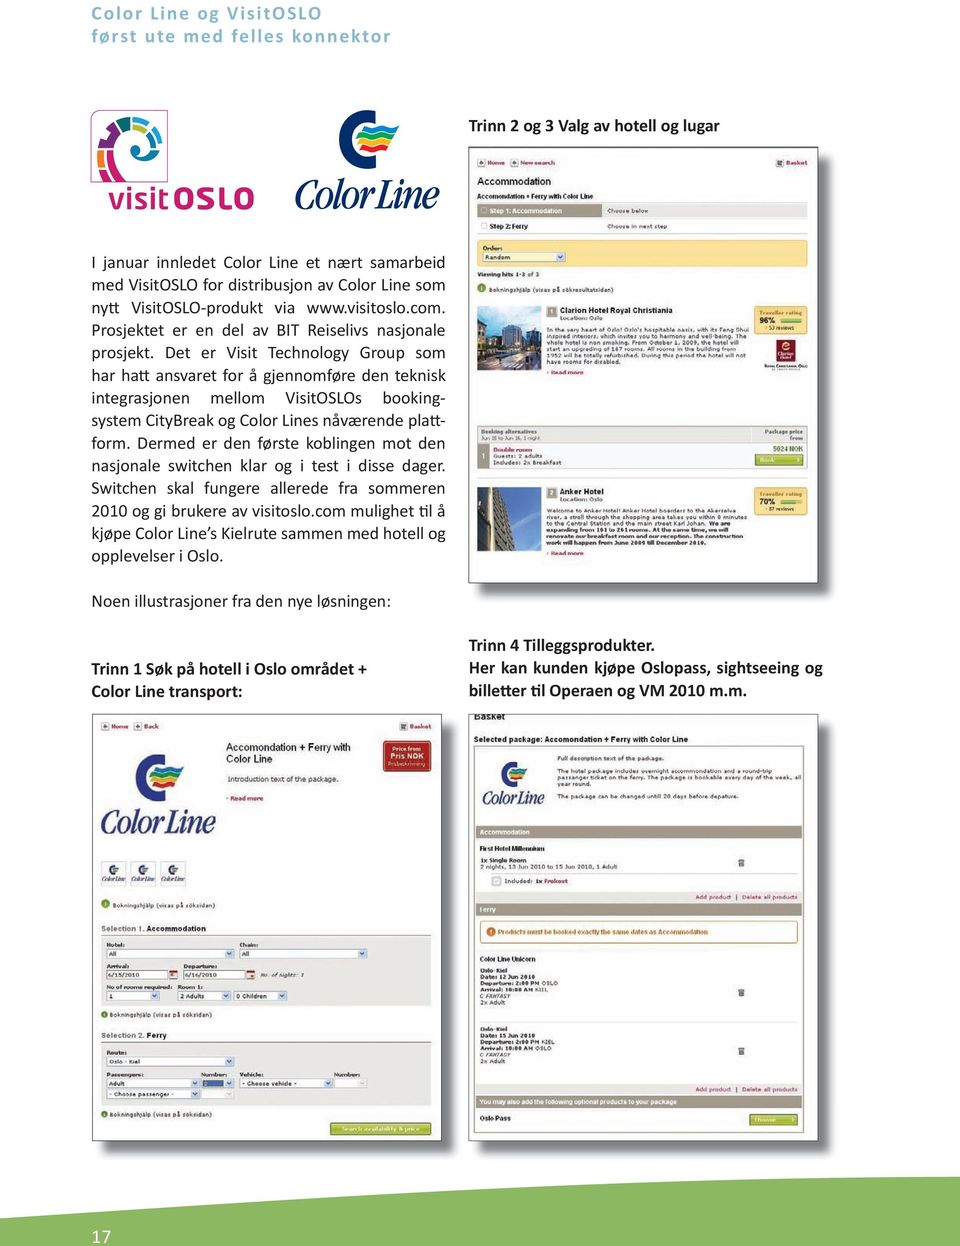 Det er Visit Technology Group som har hatt ansvaret for å gjennomføre den teknisk integrasjonen mellom VisitOSLOs bookingsystem CityBreak og Color Lines nåværende plattform.